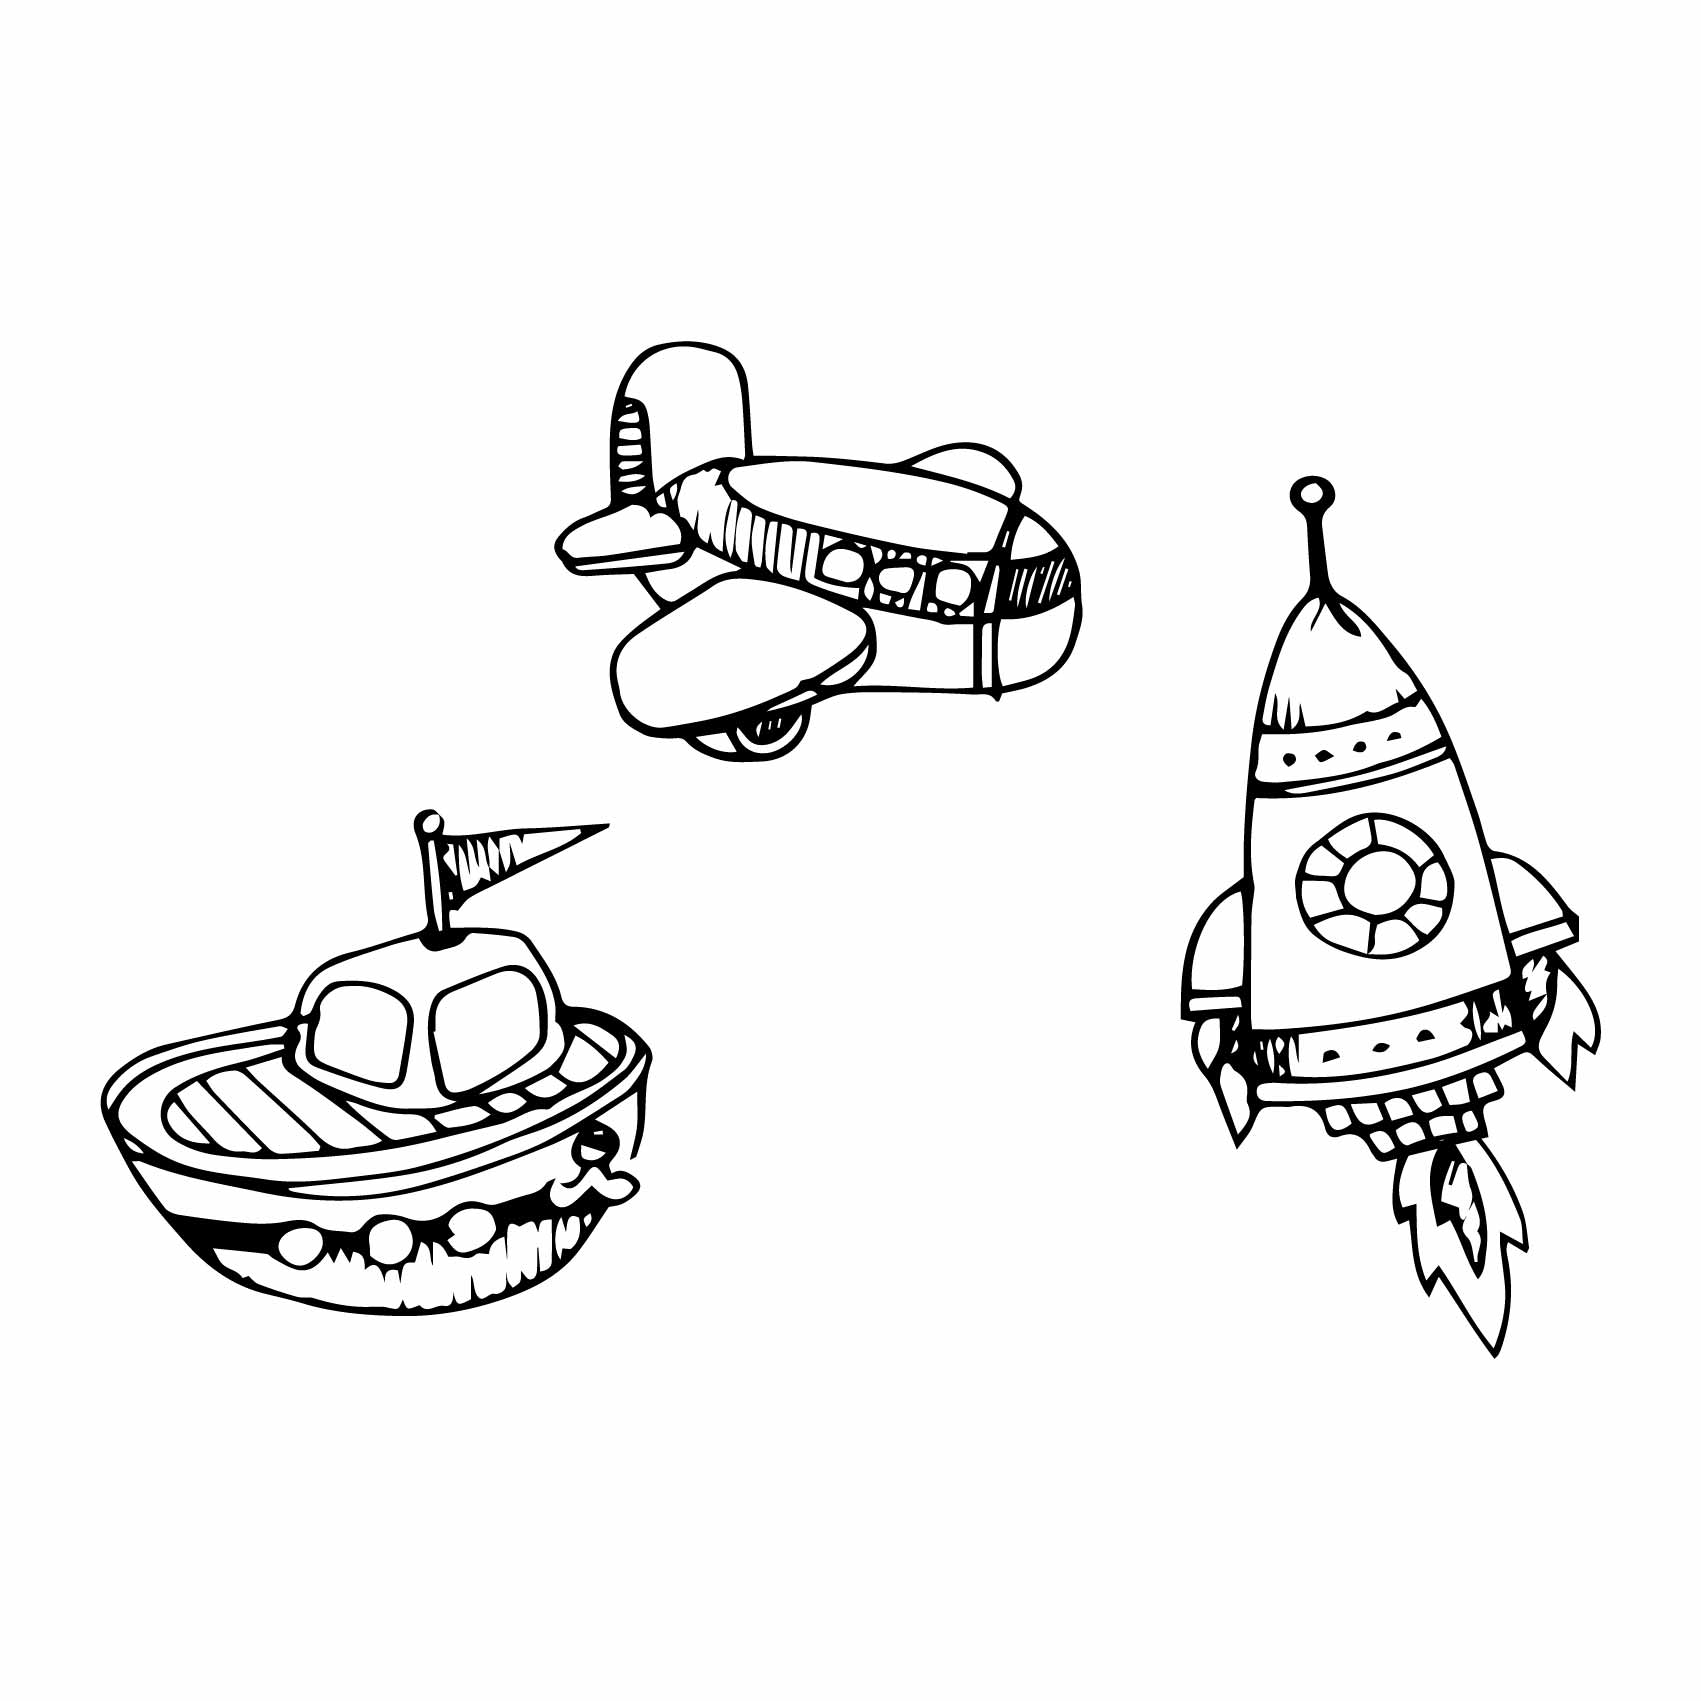 stickers-fusée-avion-bateau-ref19bebe-stickers-muraux-bébé-autocollant-mural-bébé-sticker-chambre-enfant-garcon-decoration-deco-(2)